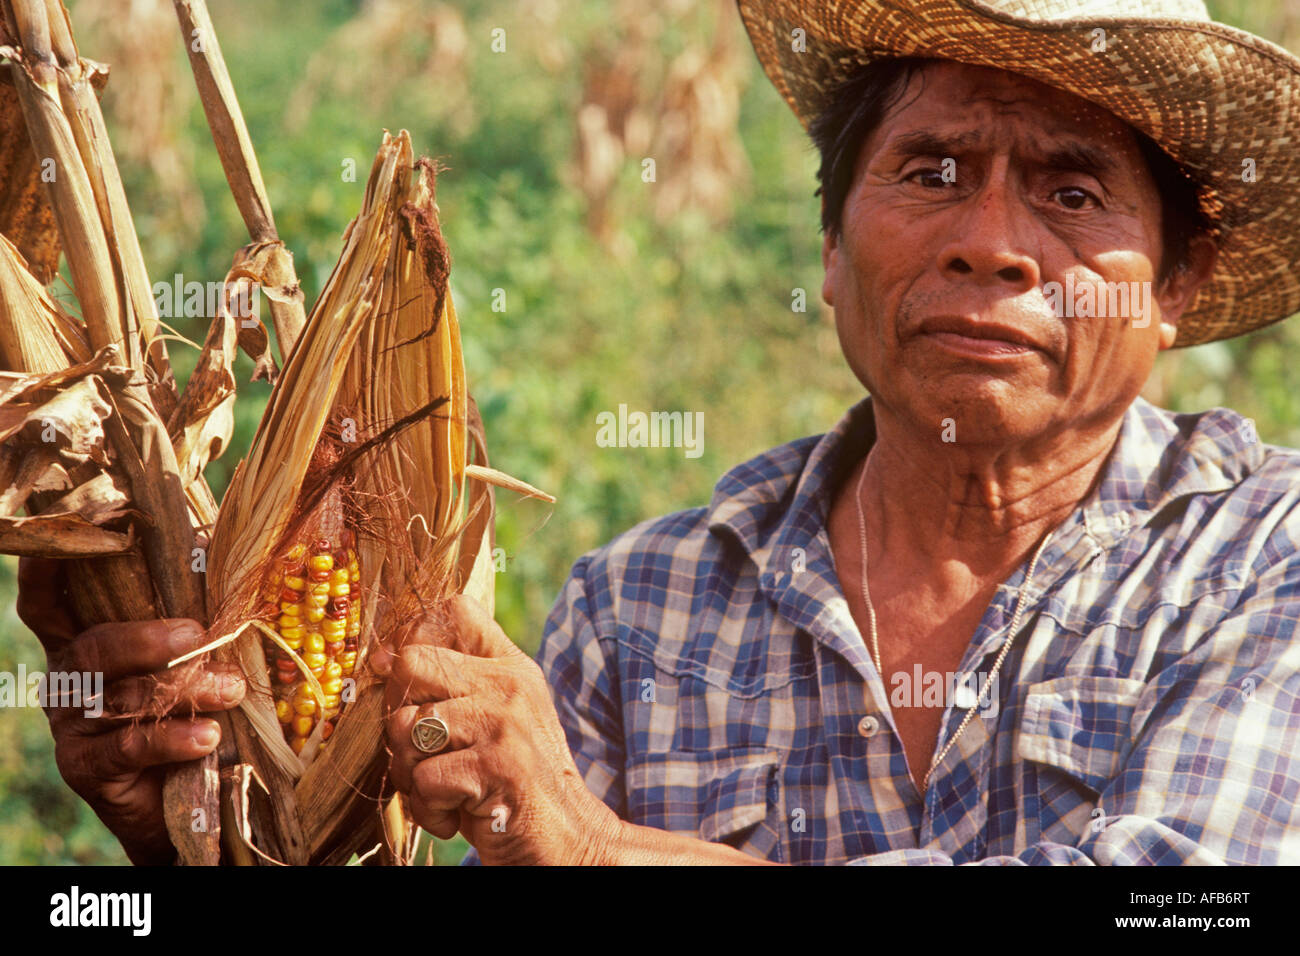 Cueillette d'agriculteurs indiens mayas Leona maïs au Mexique Yucatan Vicaire Banque D'Images